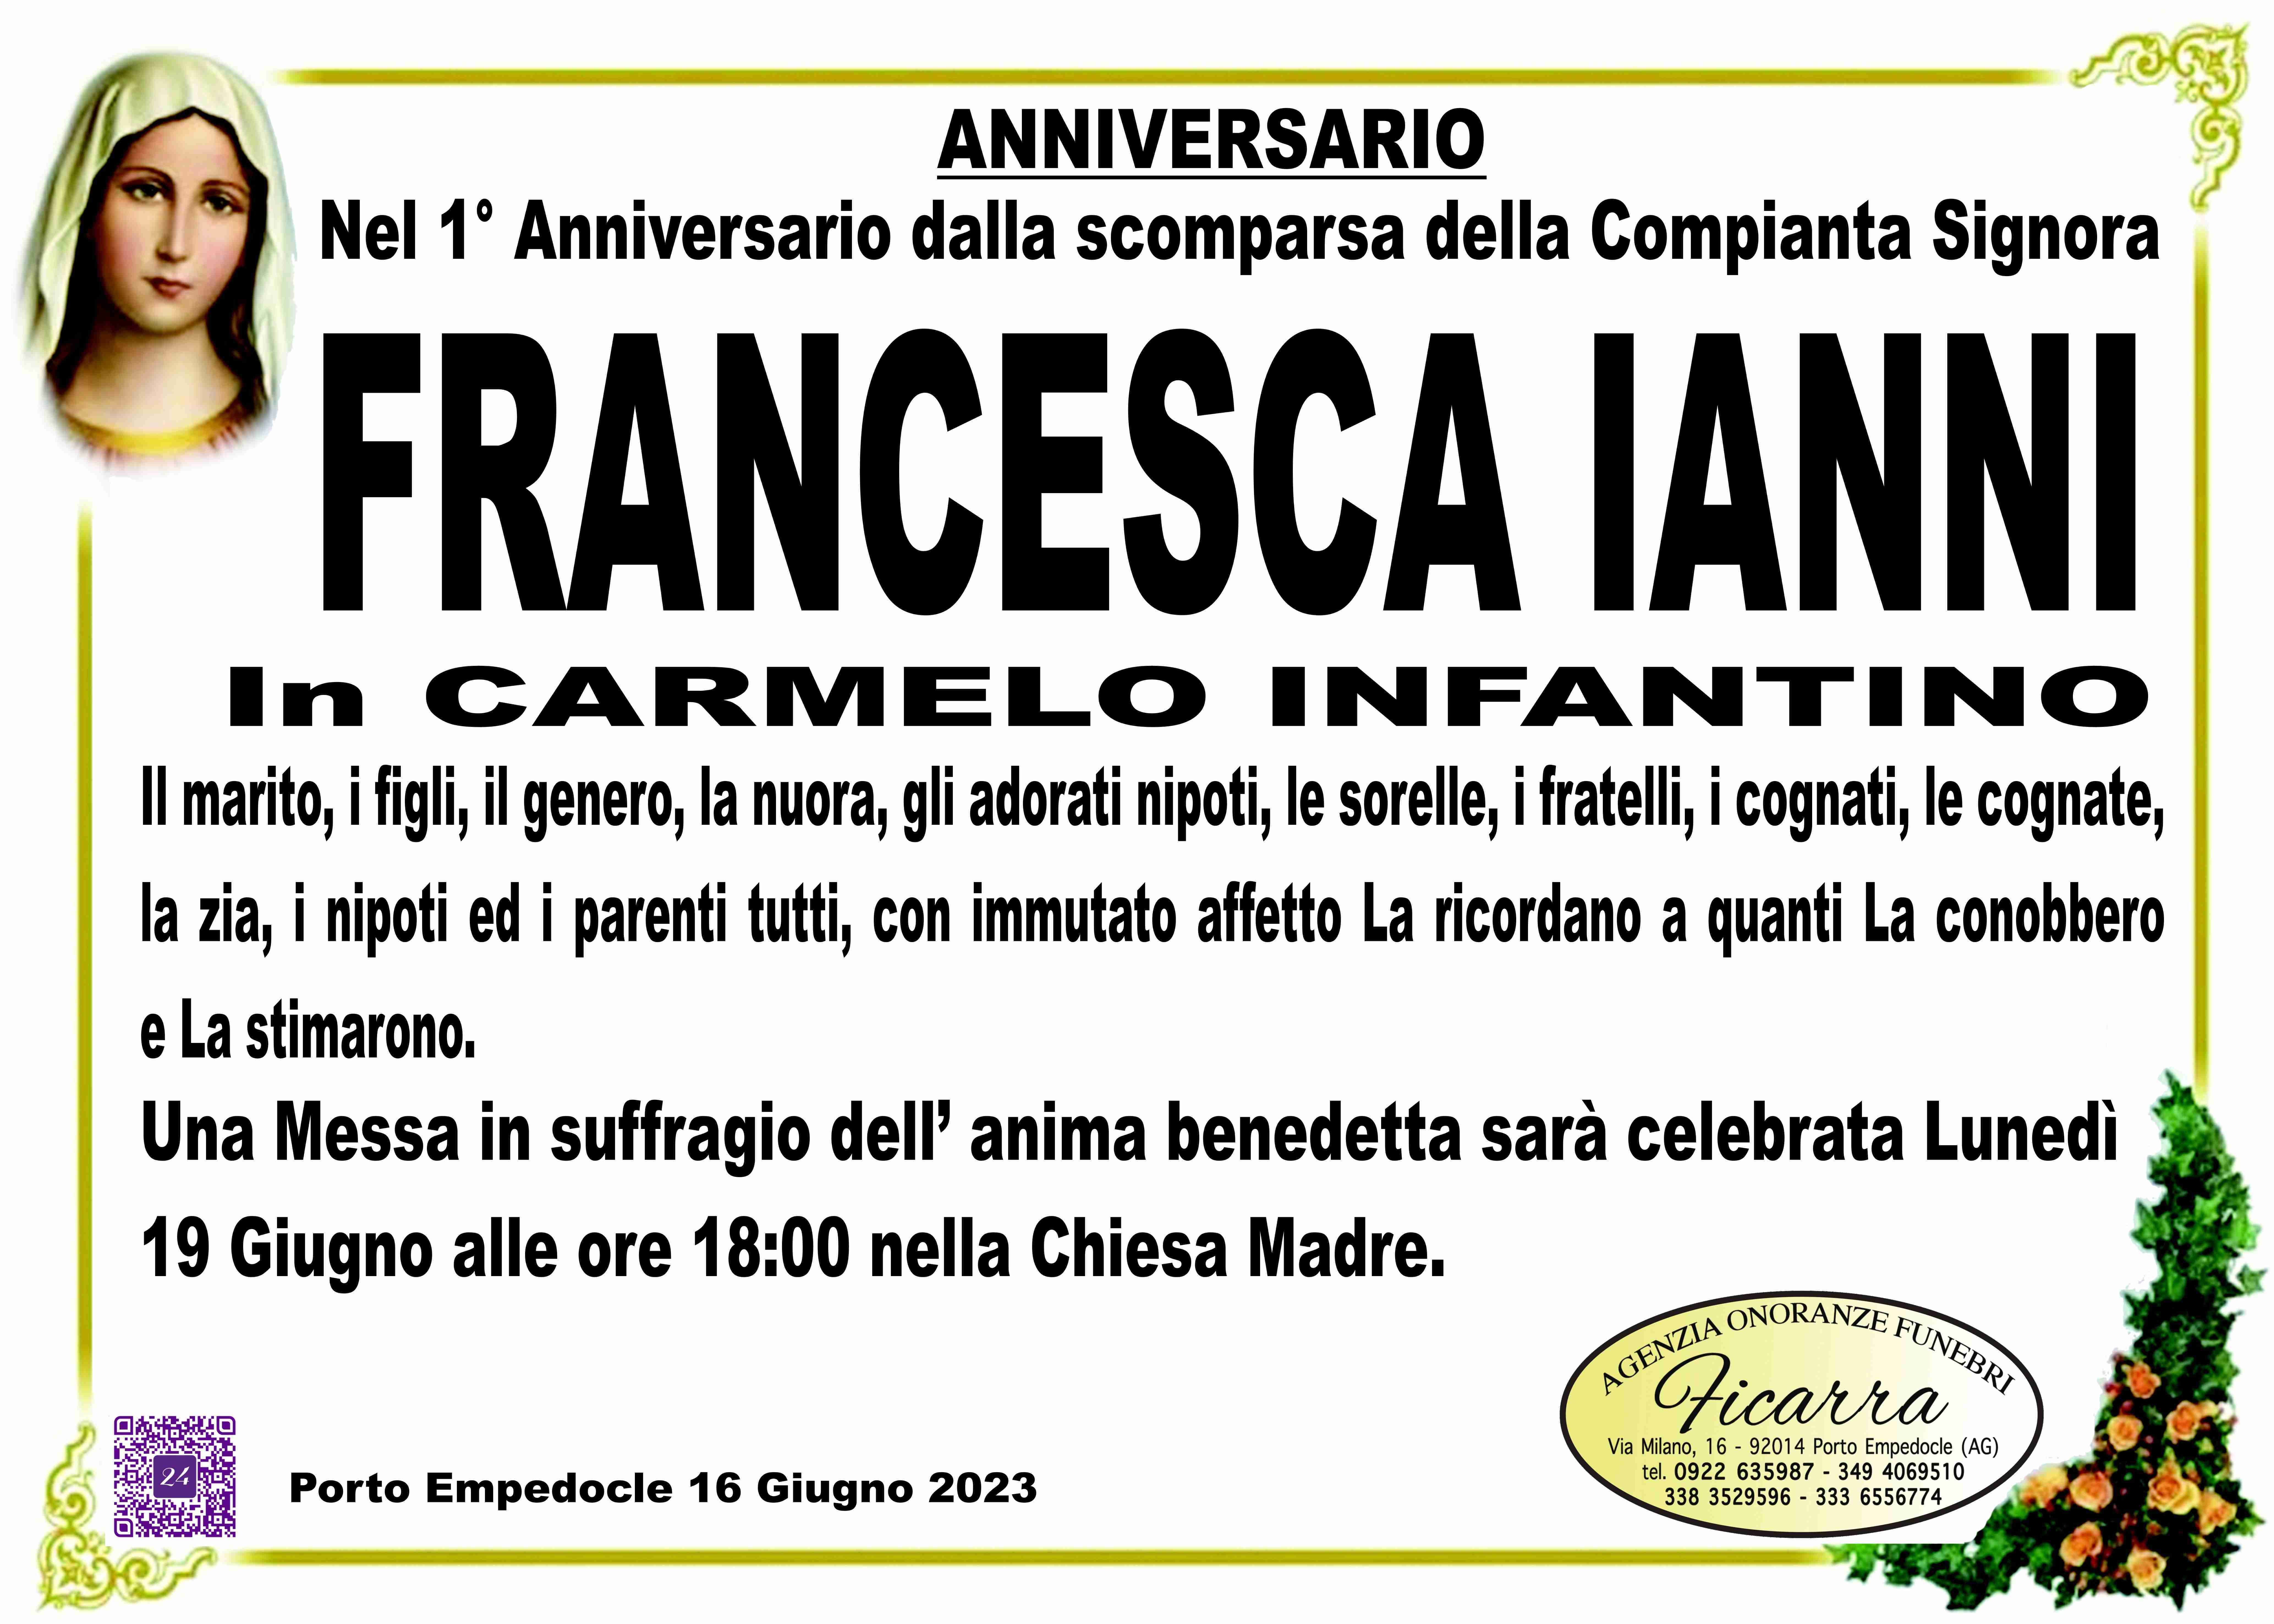 Francesca Ianni